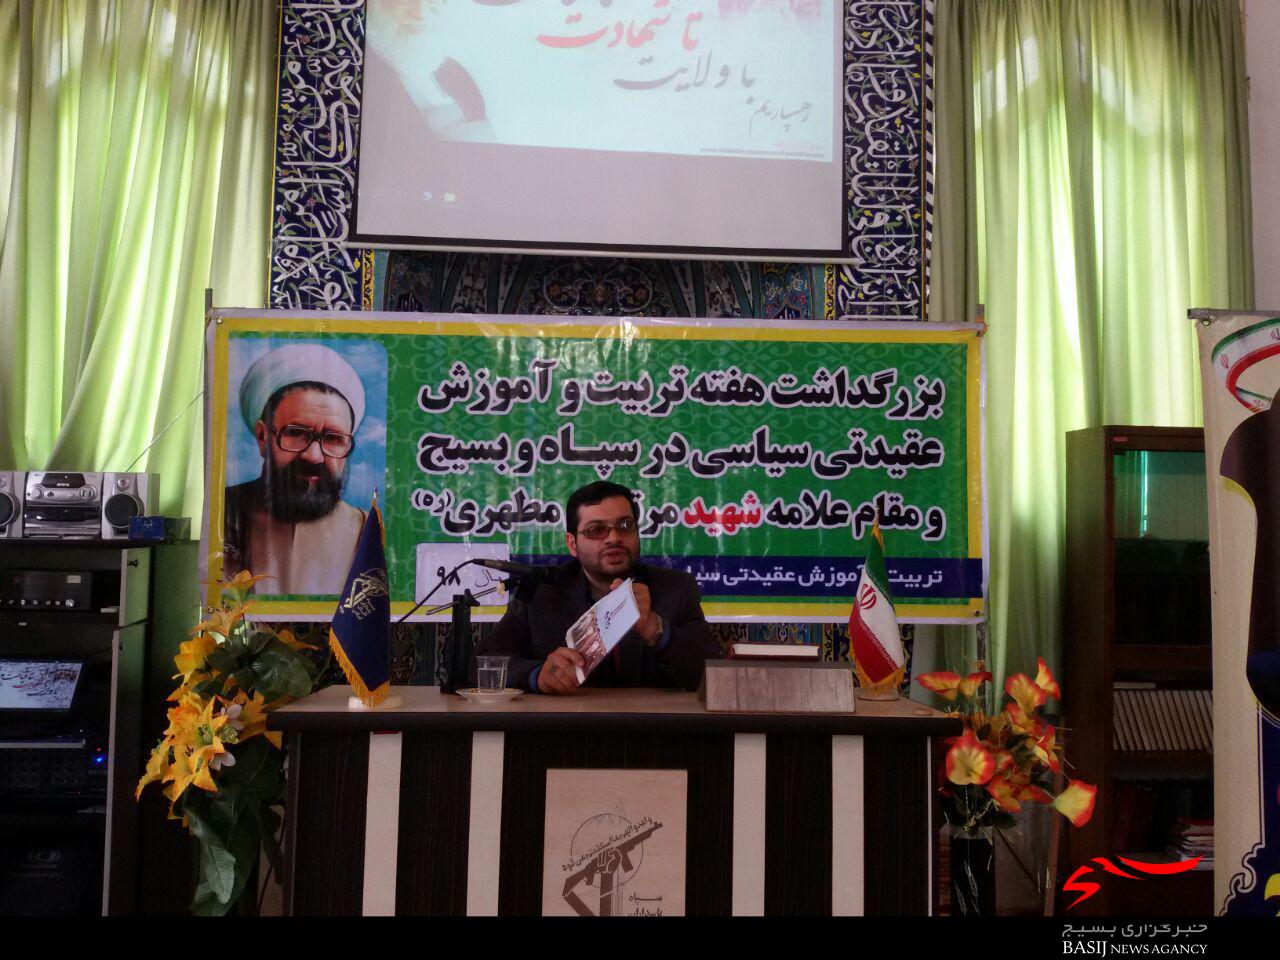 مراسم گرامیداشت روز عقیدتی سیاسی سپاه در لاهیجان برگزار شد + تصاویر